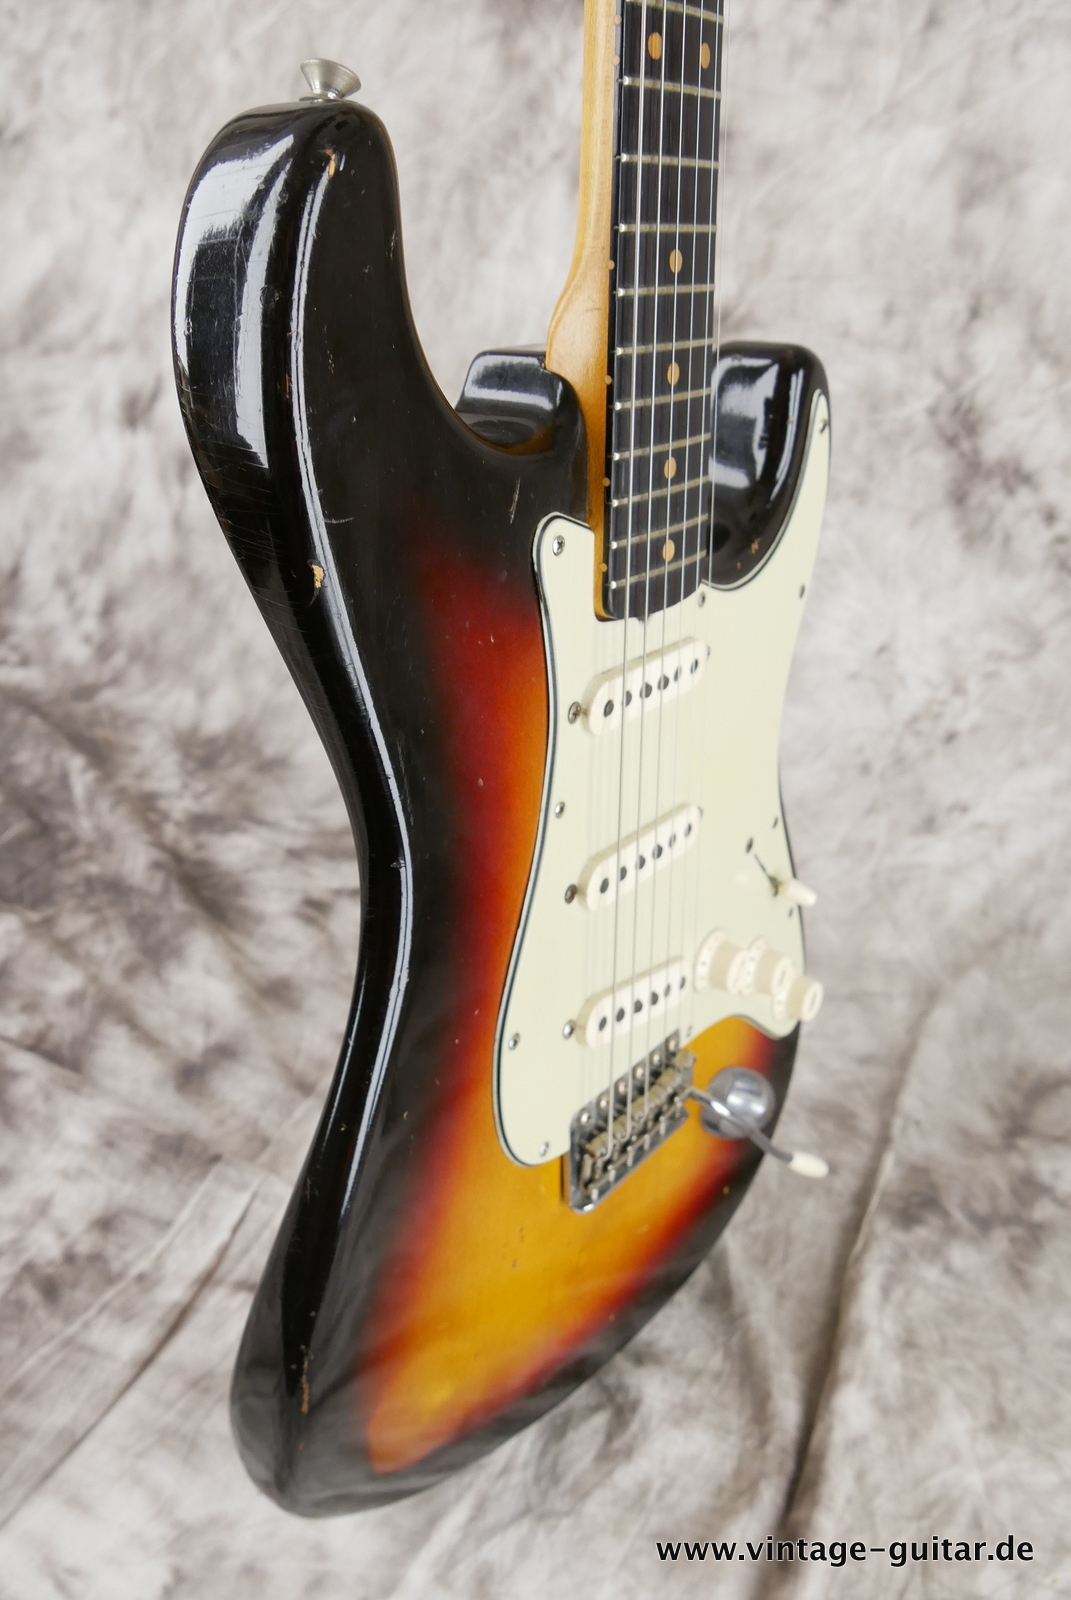 Fender_Stratocaster_sunburst_1963-005.JPG